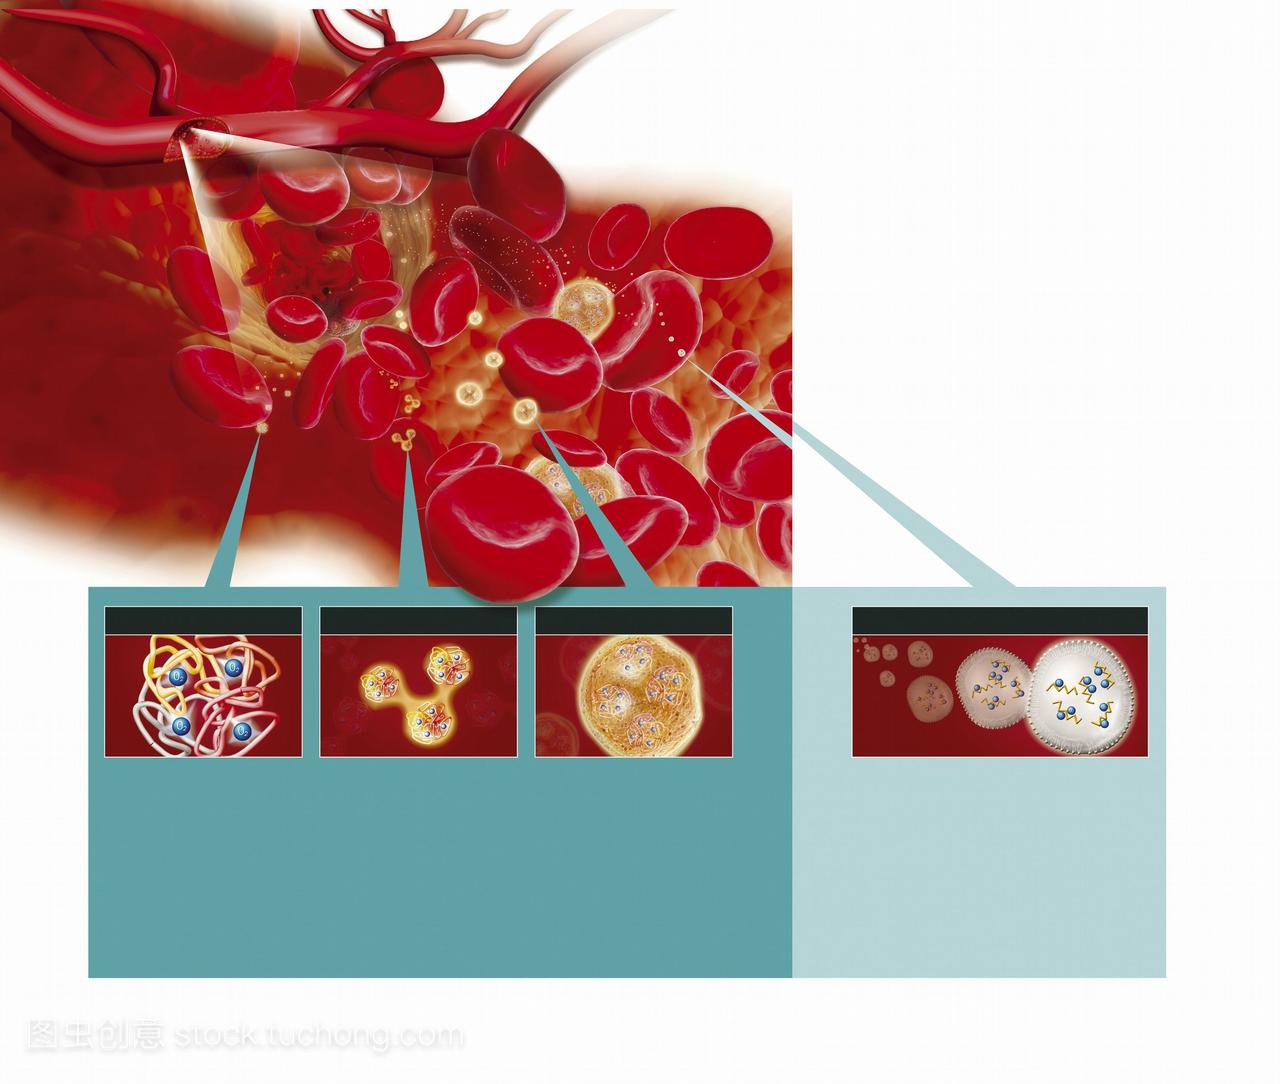 合成红细胞。计算机图形显示阶段血红蛋白生产